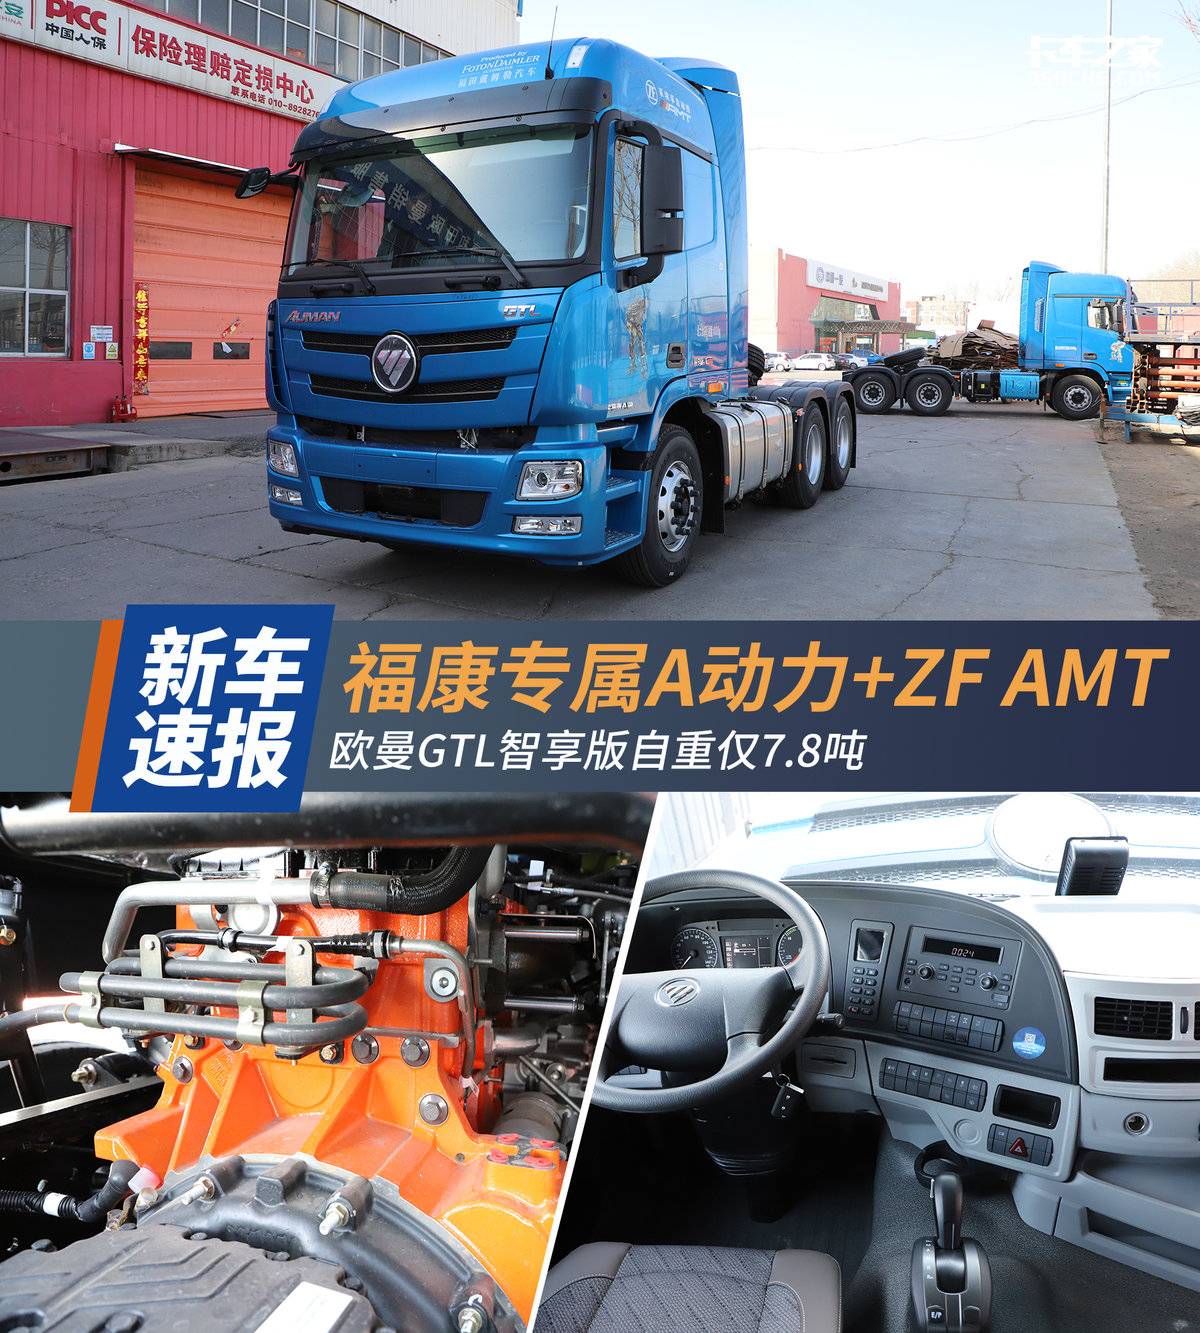 福康专属A动力+ZF AMT 欧曼GTL智享版自重仅7.8吨